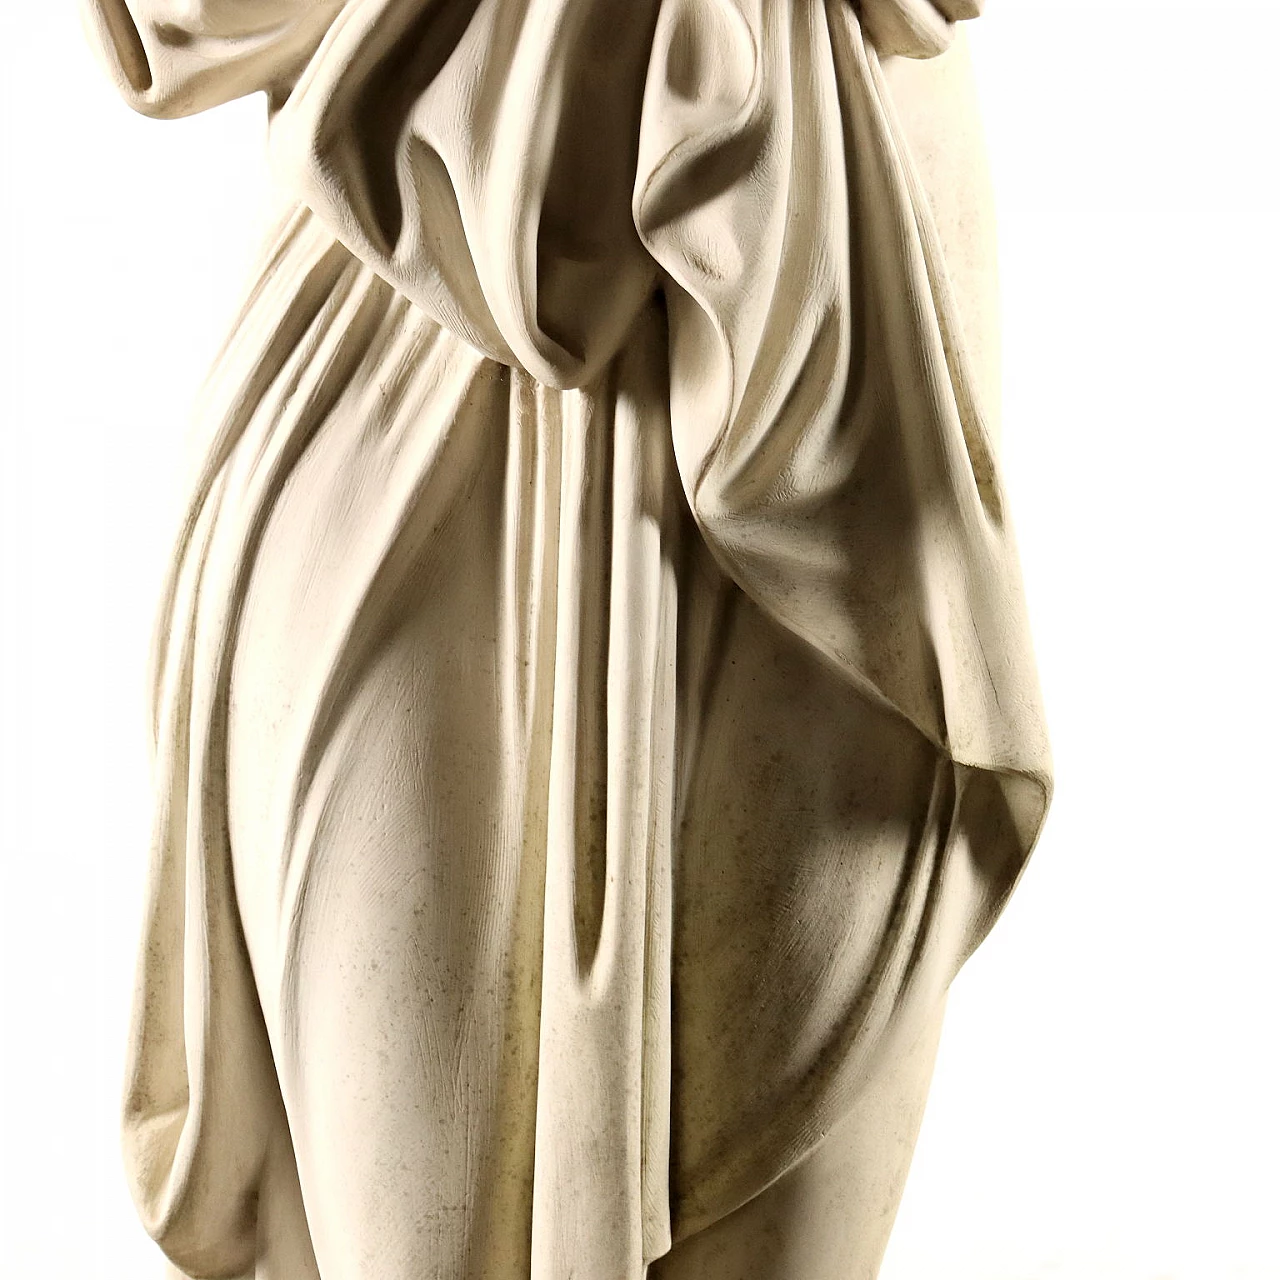 Dal Torrione, Venere Italica, scultura in marmo sintetico 7